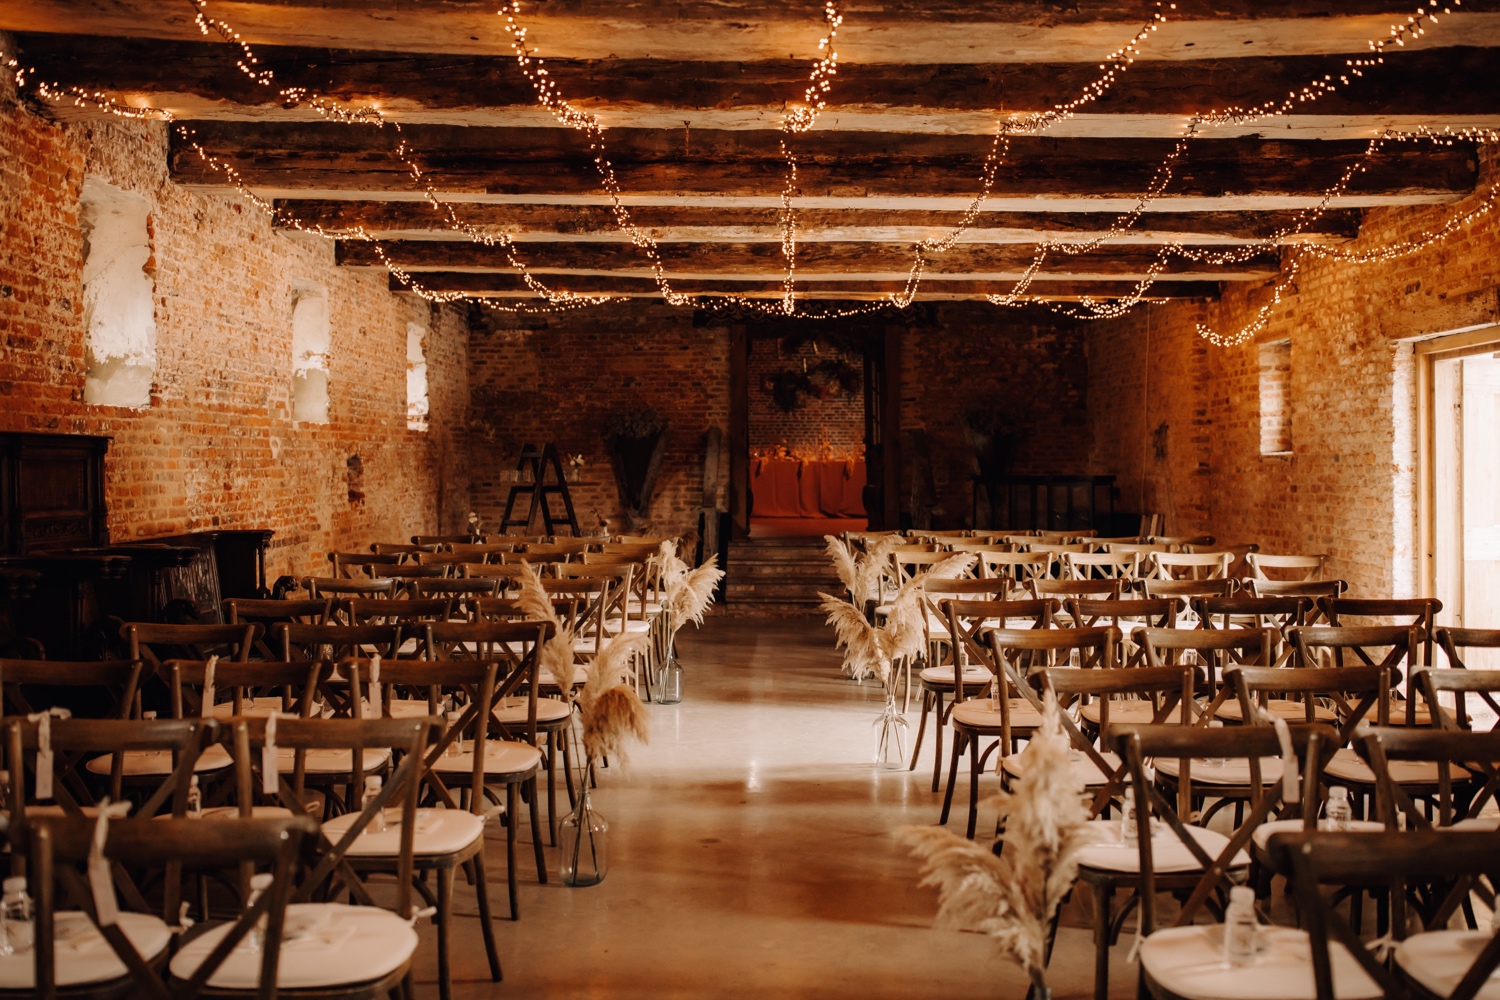 Huwelijksfotograaf Limburg - overzicht van de aankleding van de ceremonie in het kasteel van hoen